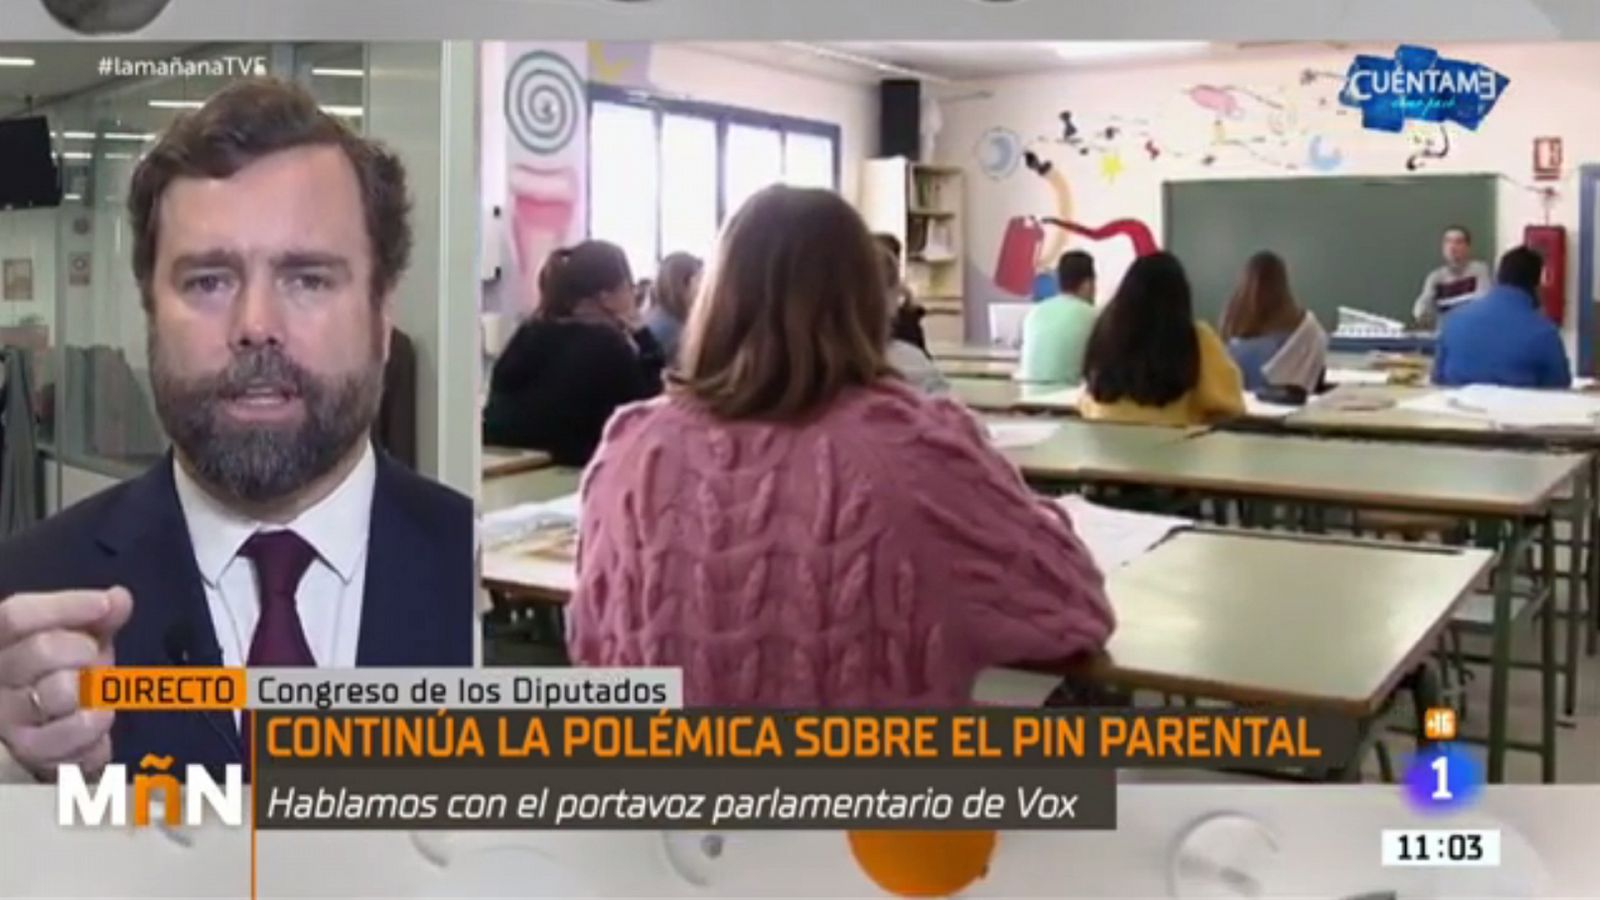 Vox justifica los bulos virales que usa en Twitter para reclamar el 'pin parental'